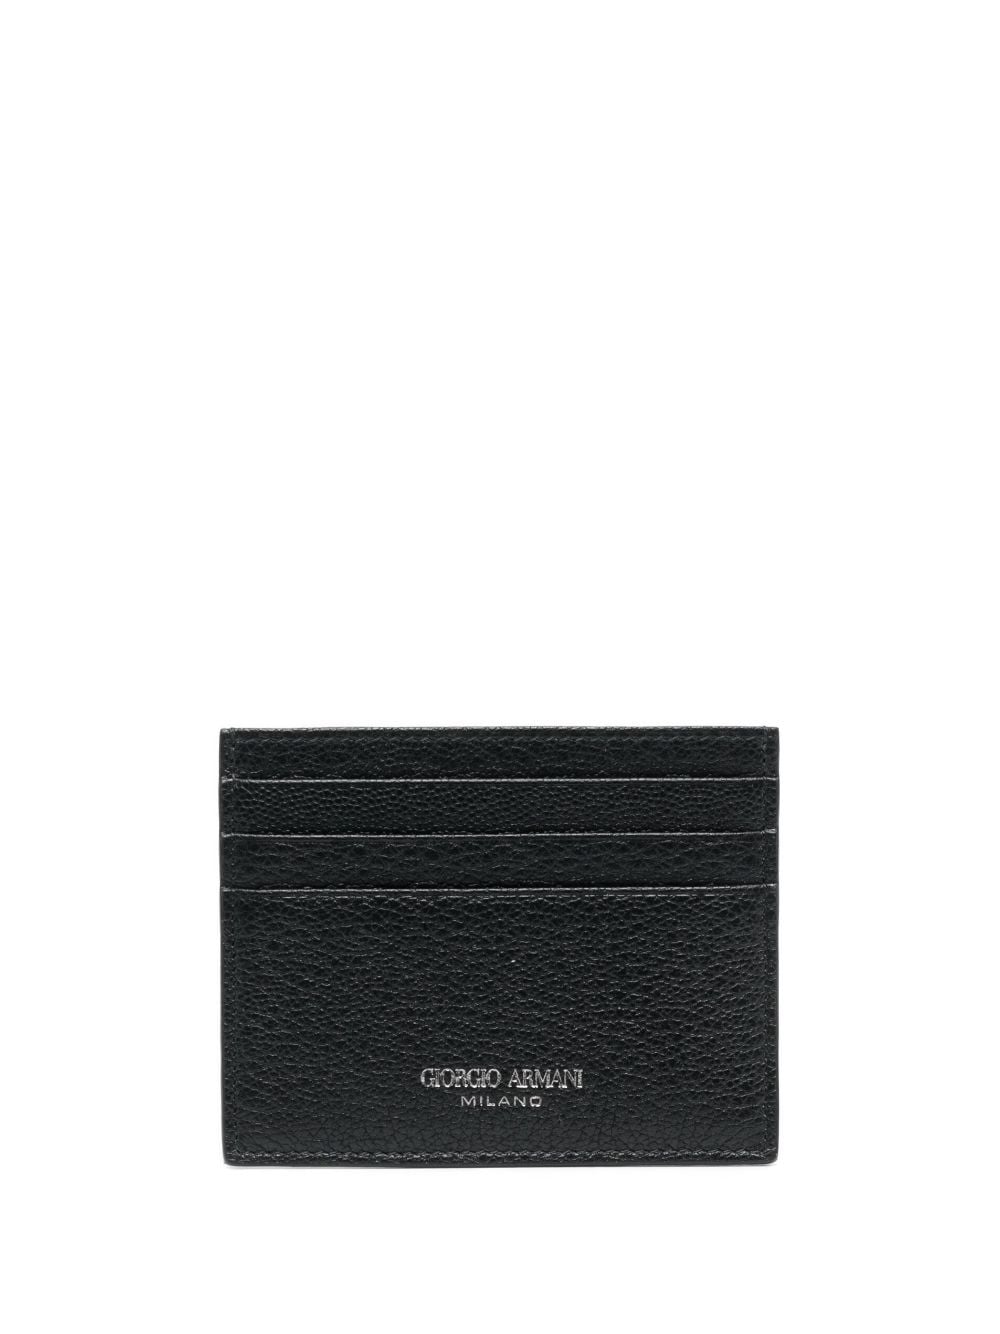 Giorgio Armani grained-textured leather card holder - Black von Giorgio Armani